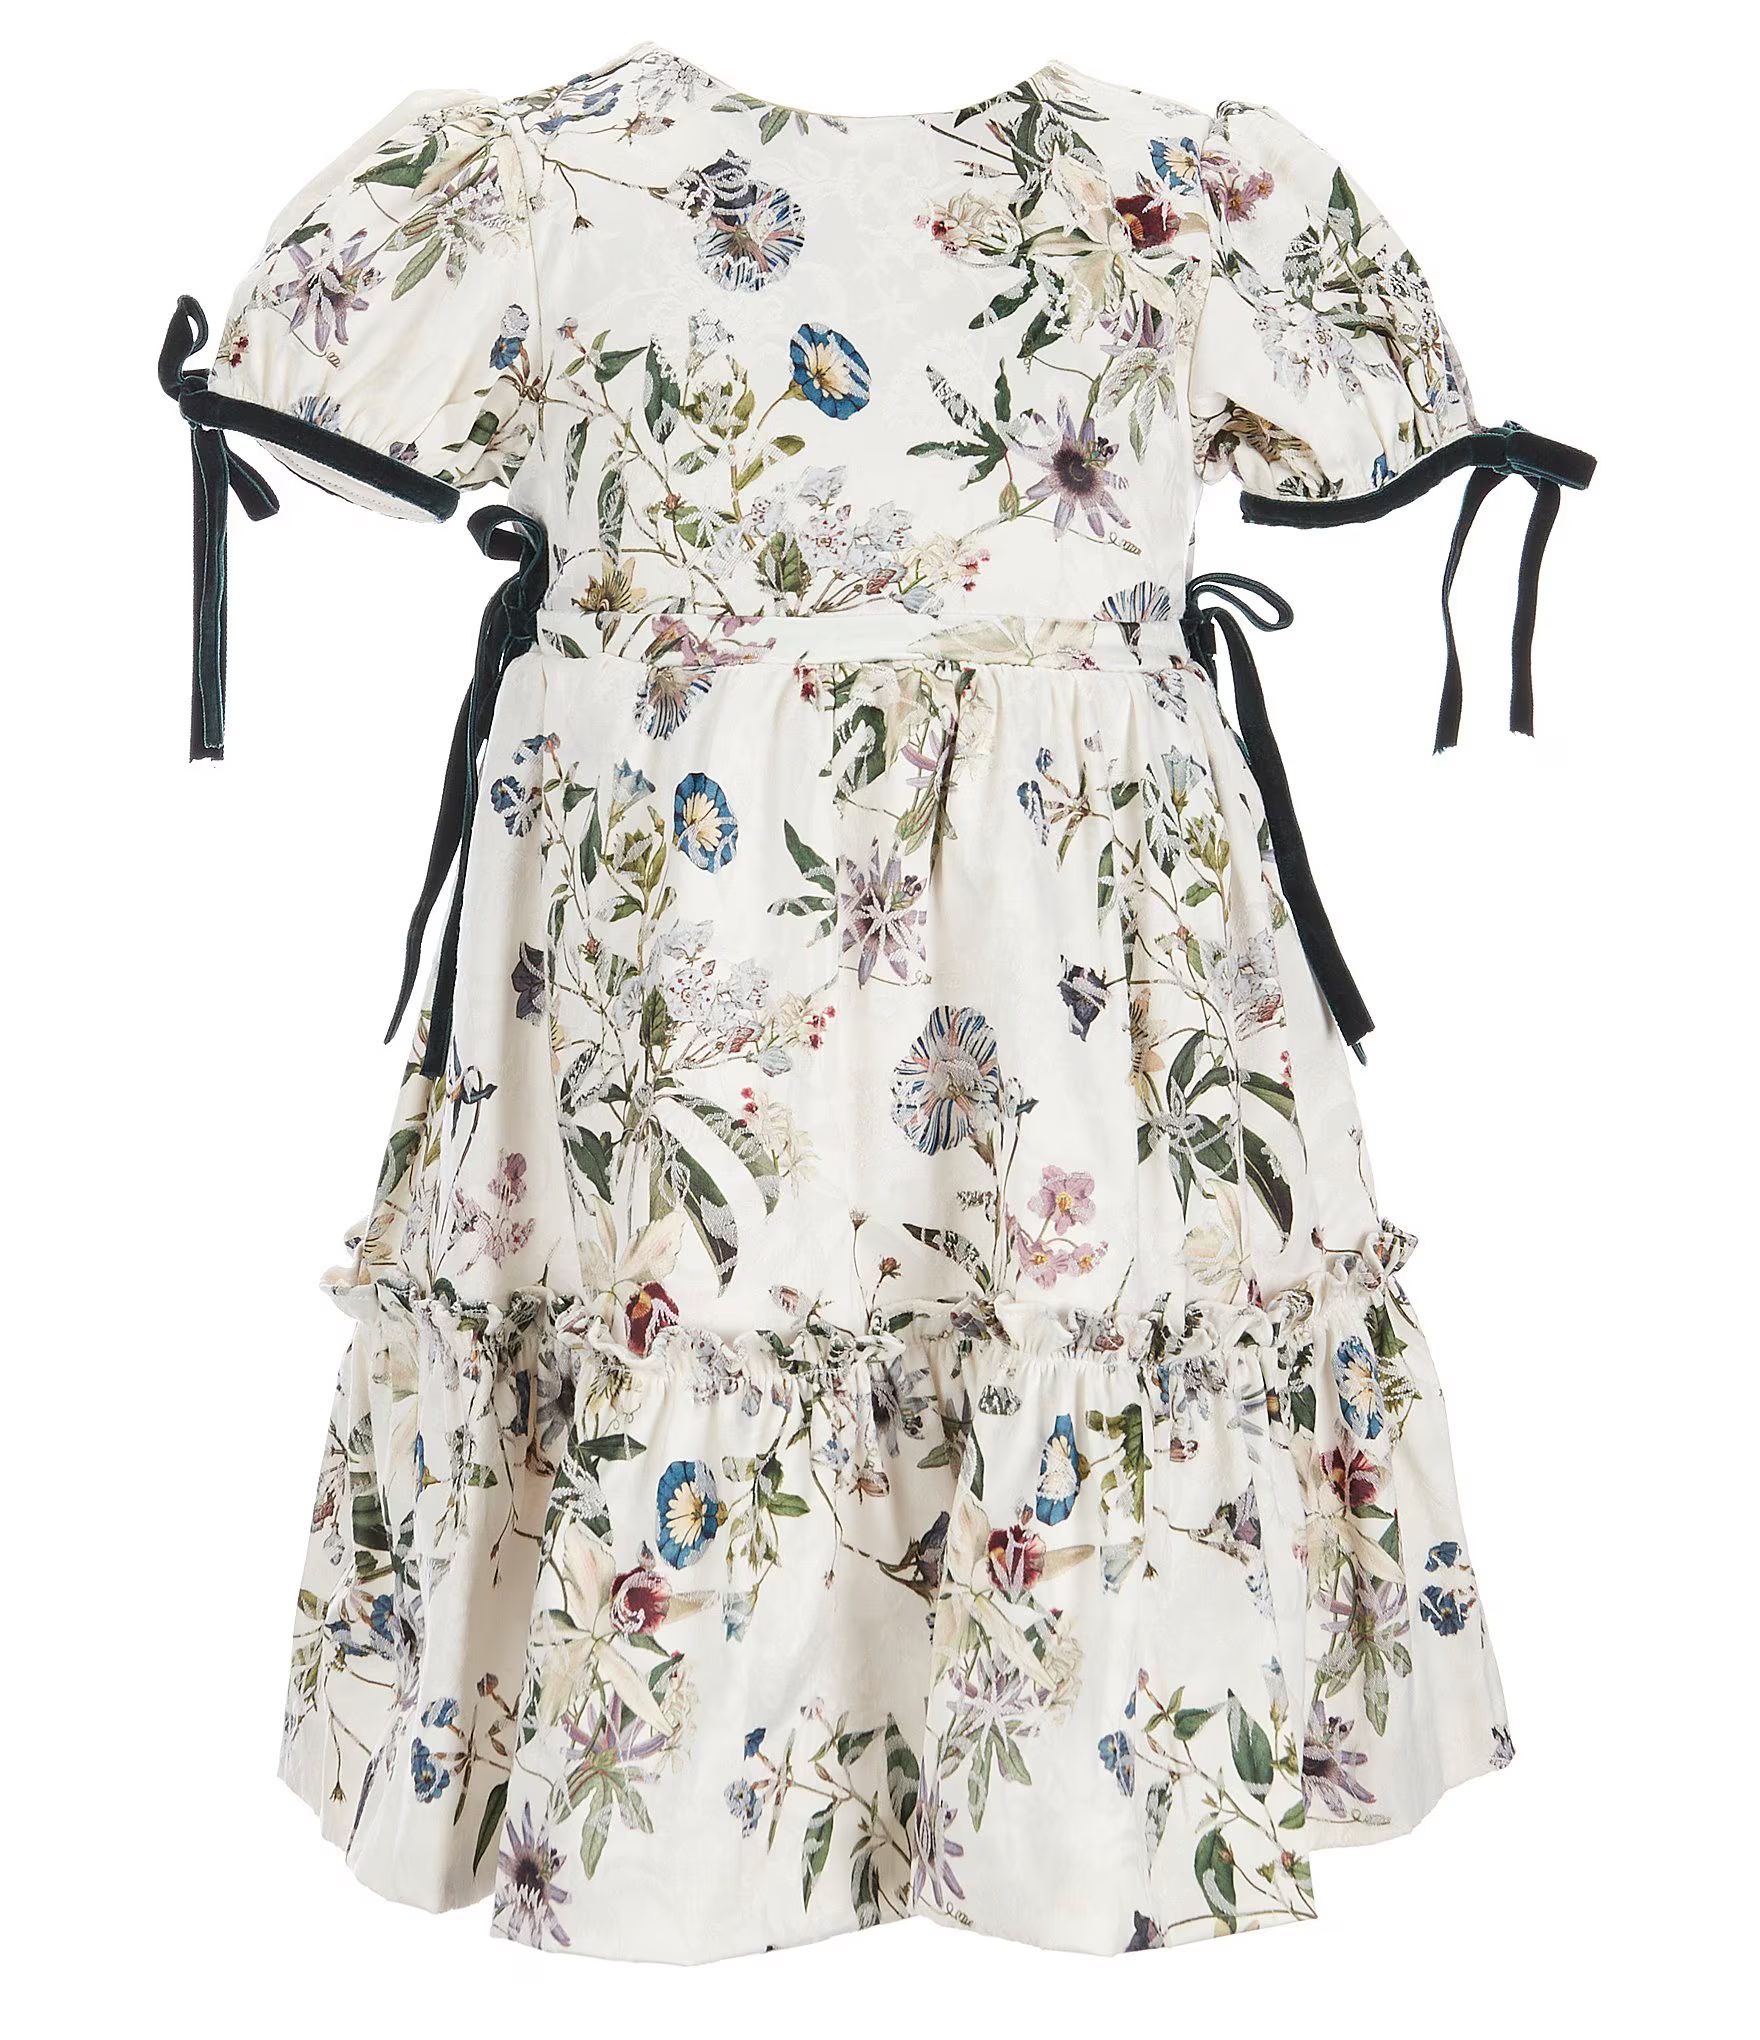 x Nicola Bathie Little Girls 2T-4T White Floral Dress | Dillards